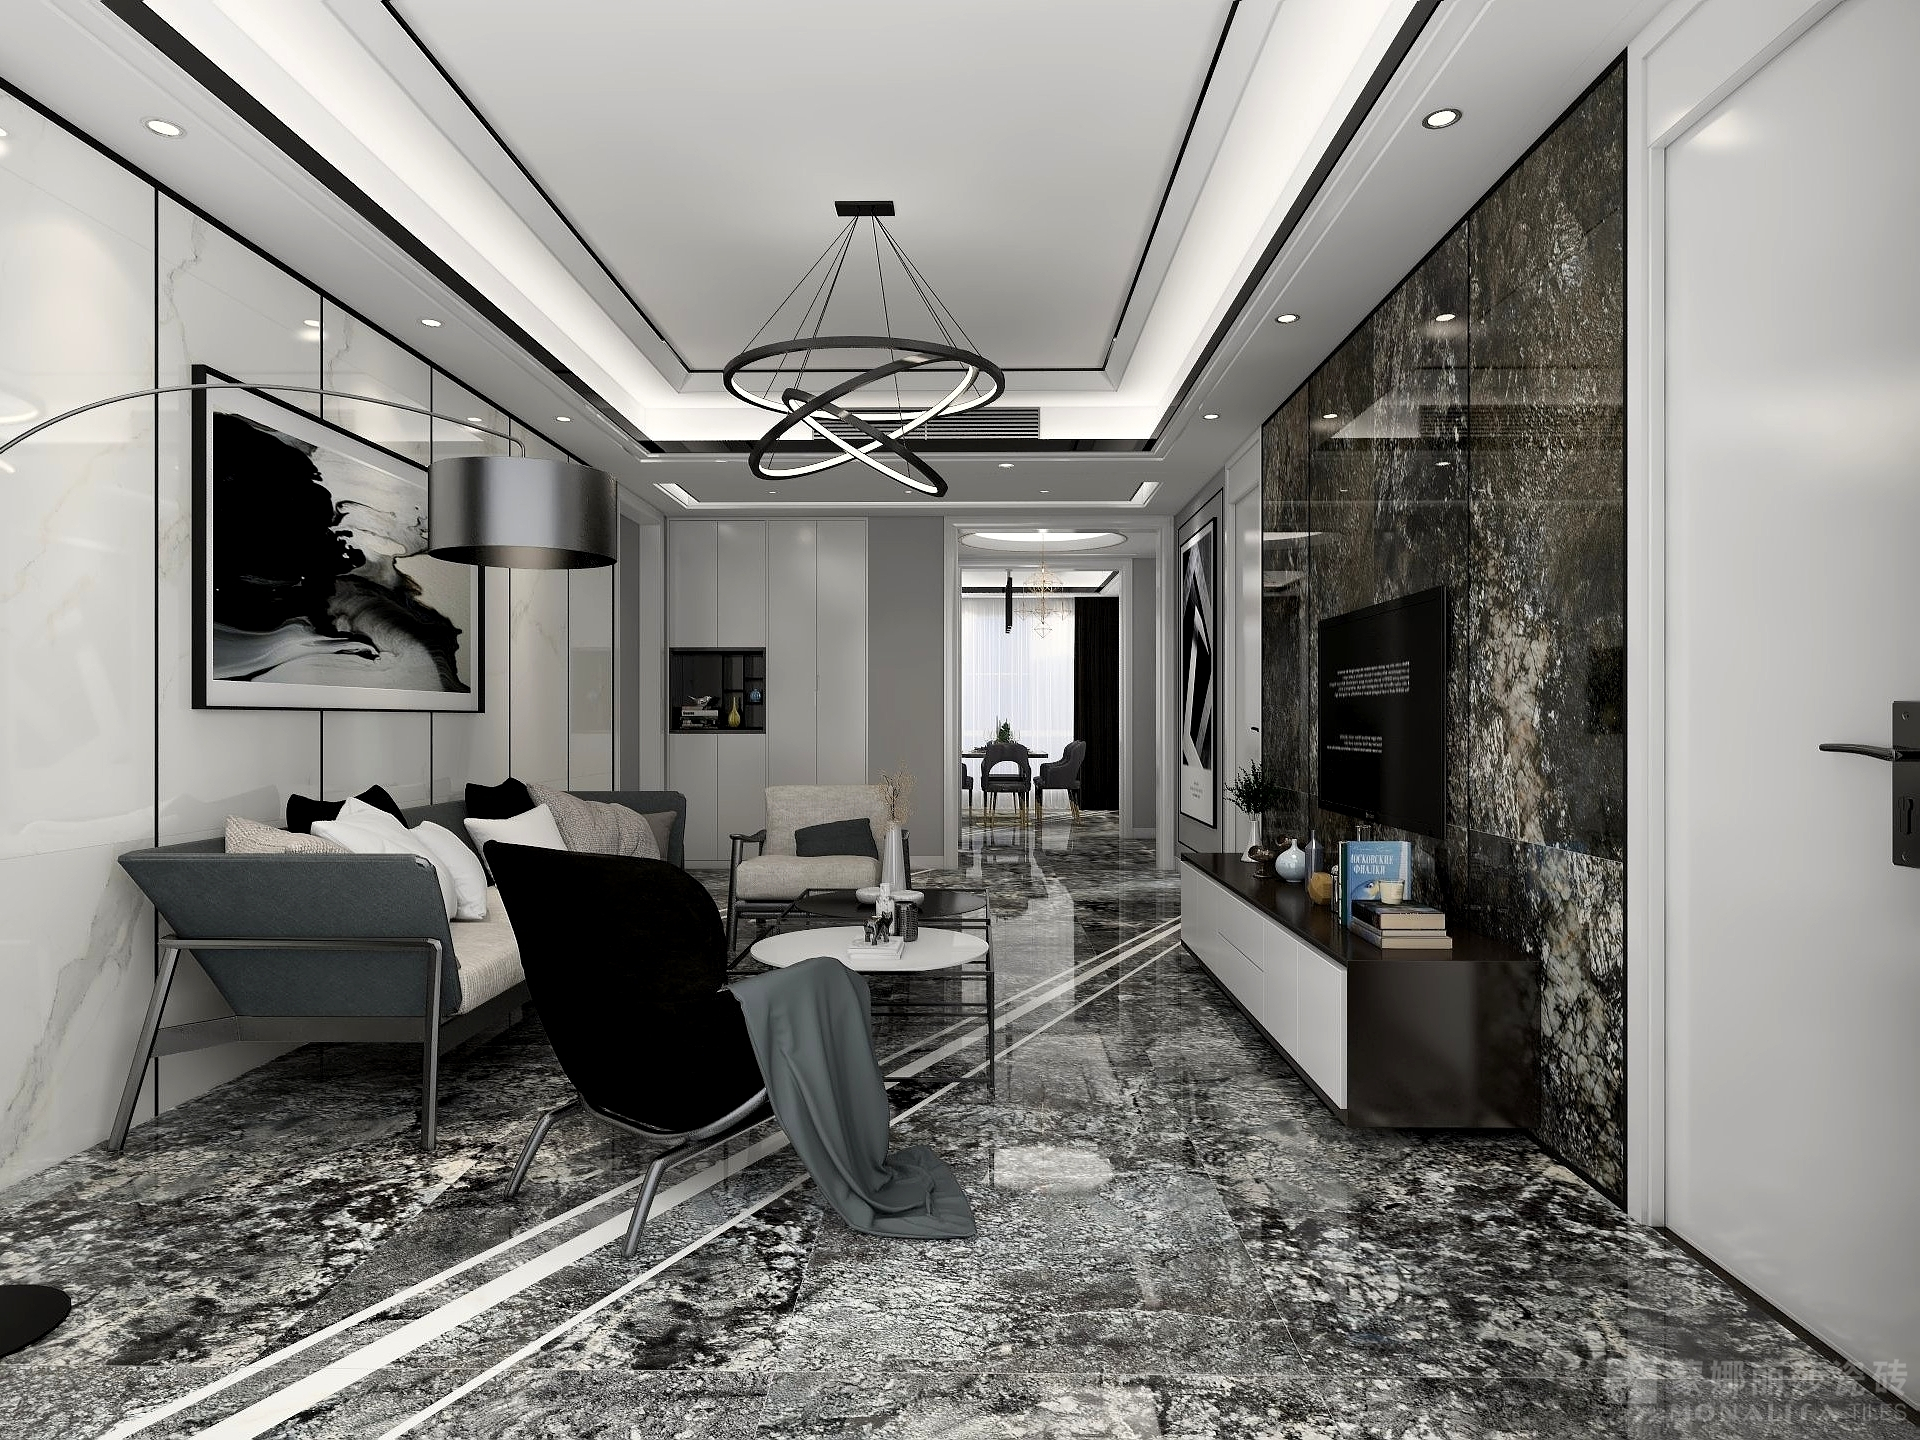 一入客厅,便是一幅高大的现代几何装饰画,黑白灰的色调运用与整体